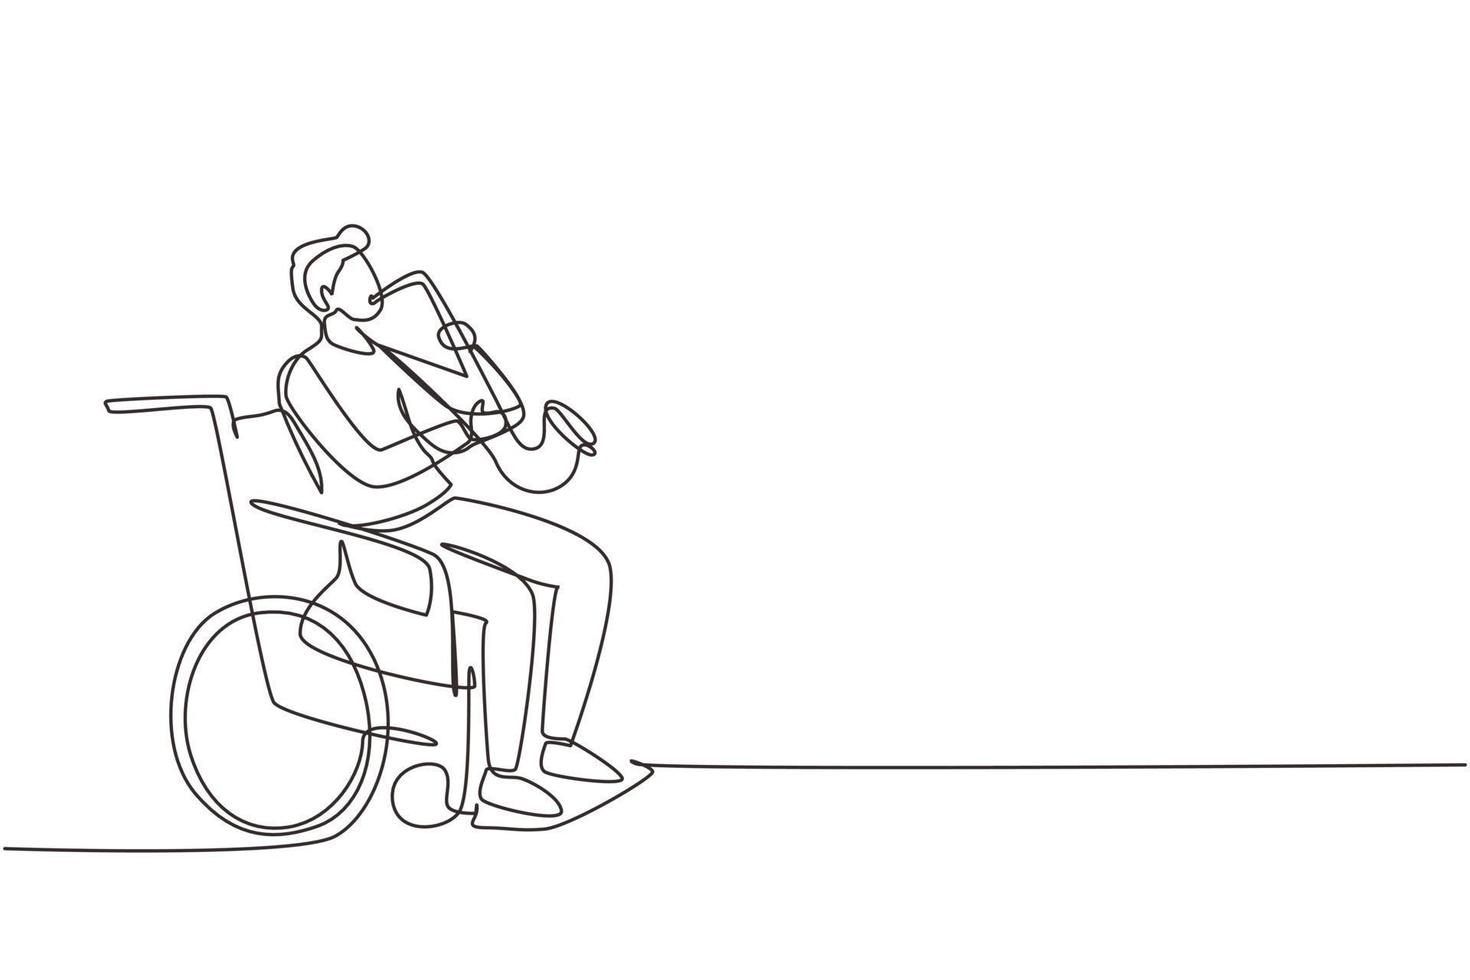 continu een lijntekening man zit in rolstoel speelt saxofoon. handicap, klassieke muziek. lichamelijk gehandicapt, gebroken been. revalidatiecentrum. enkele lijn tekenen ontwerp vectorillustratie vector